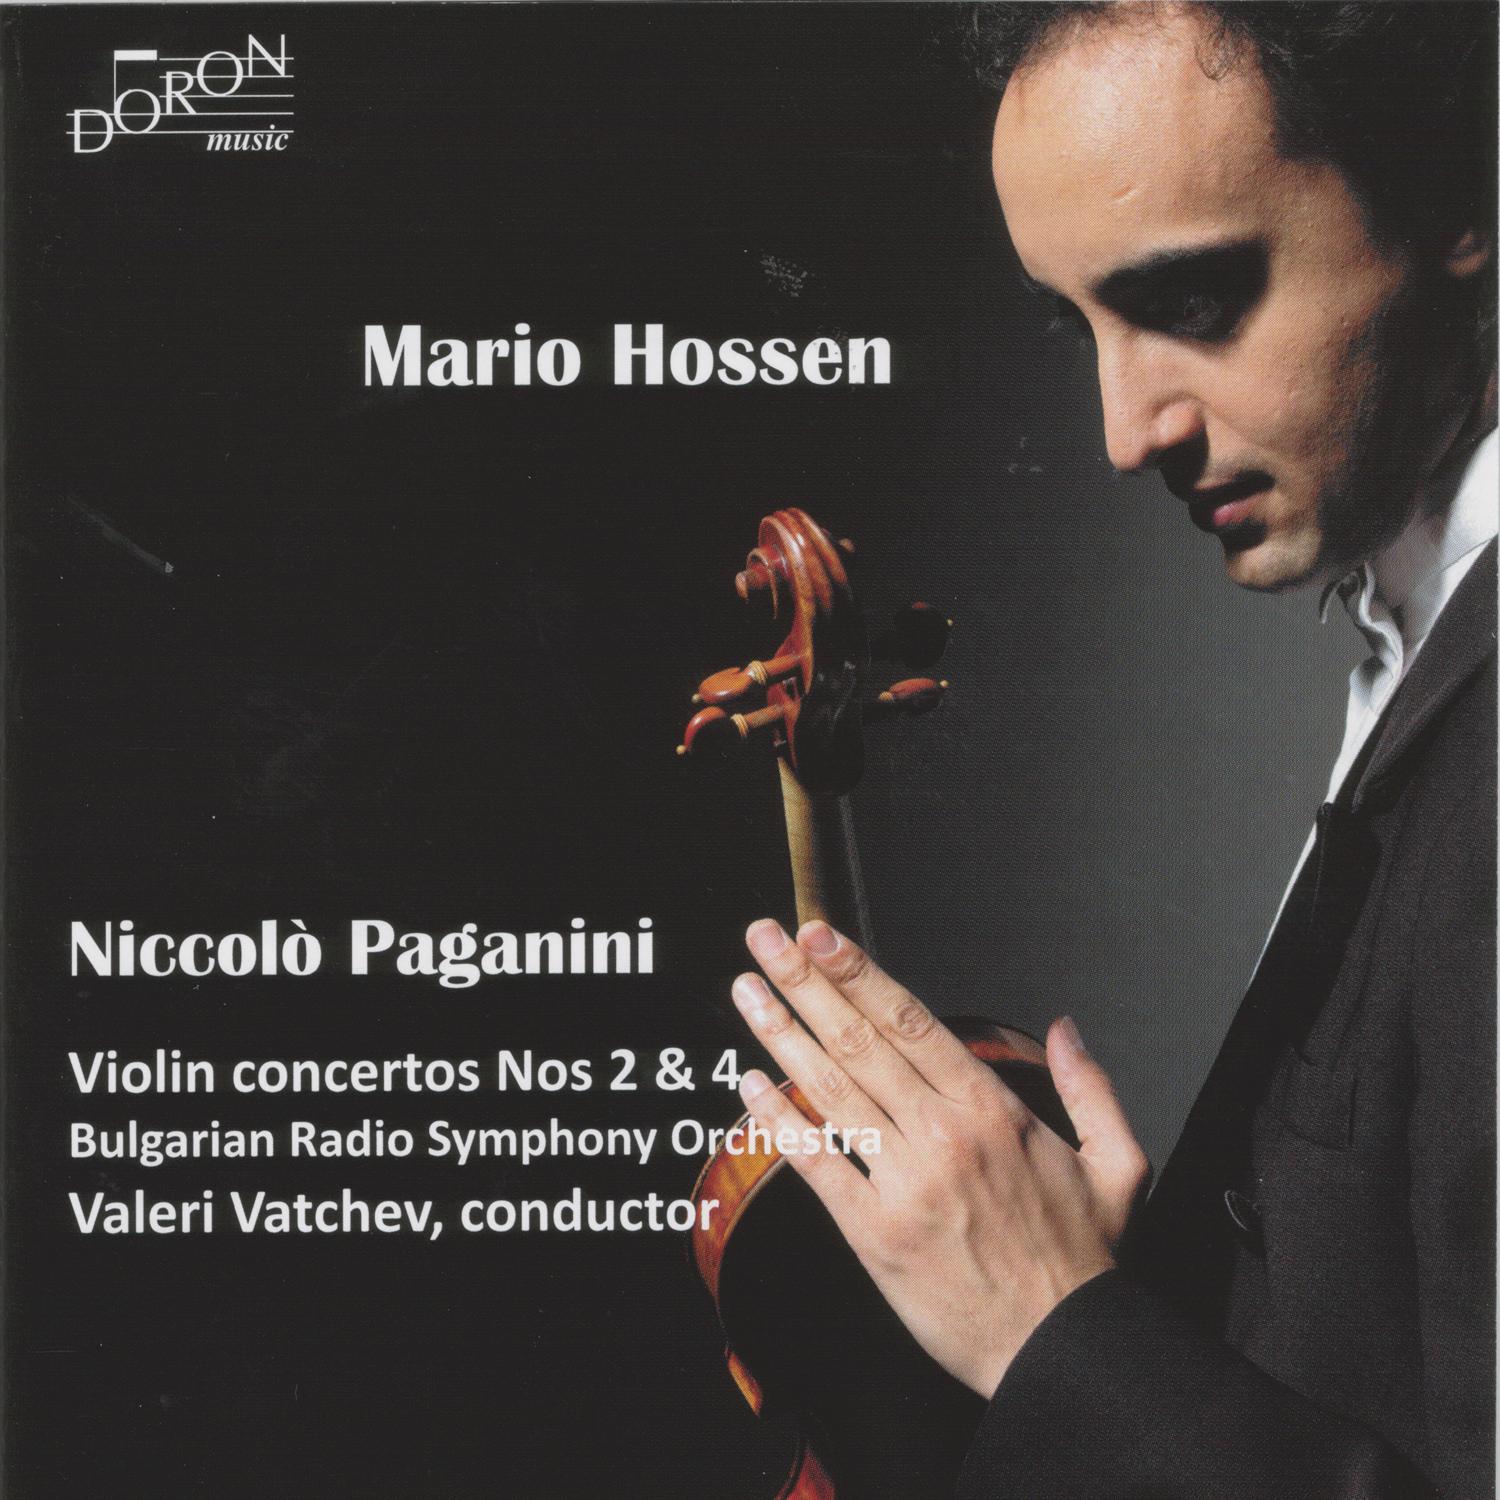 Violin Concerto No. 2 in B Minor: I. Allegro maestoso